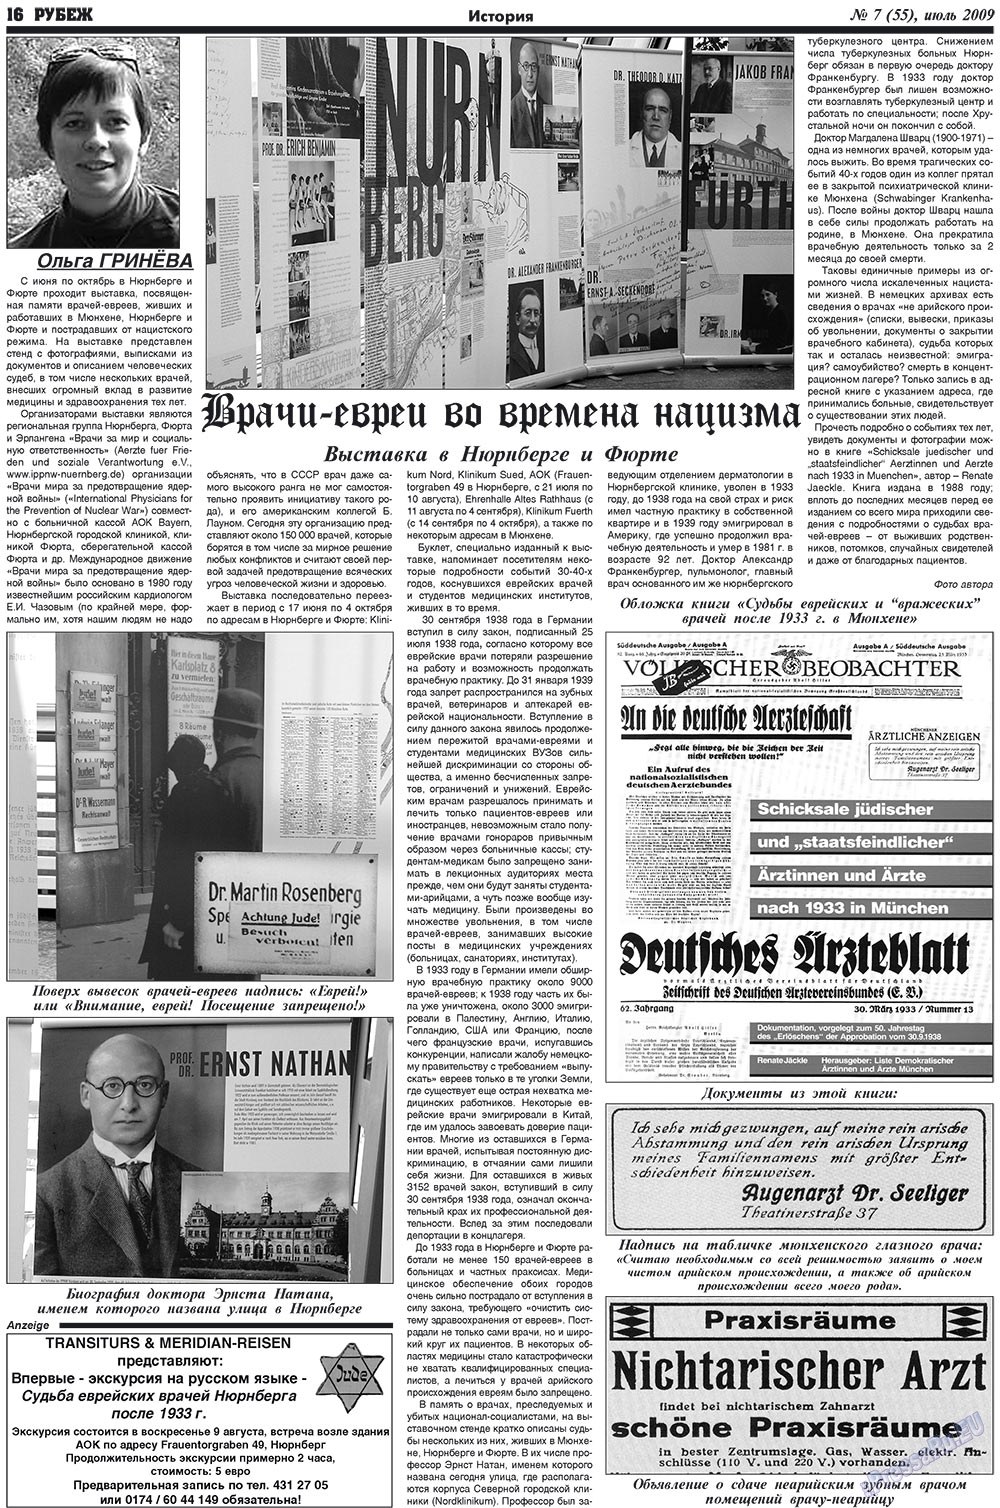 Рубеж (газета). 2009 год, номер 7, стр. 16